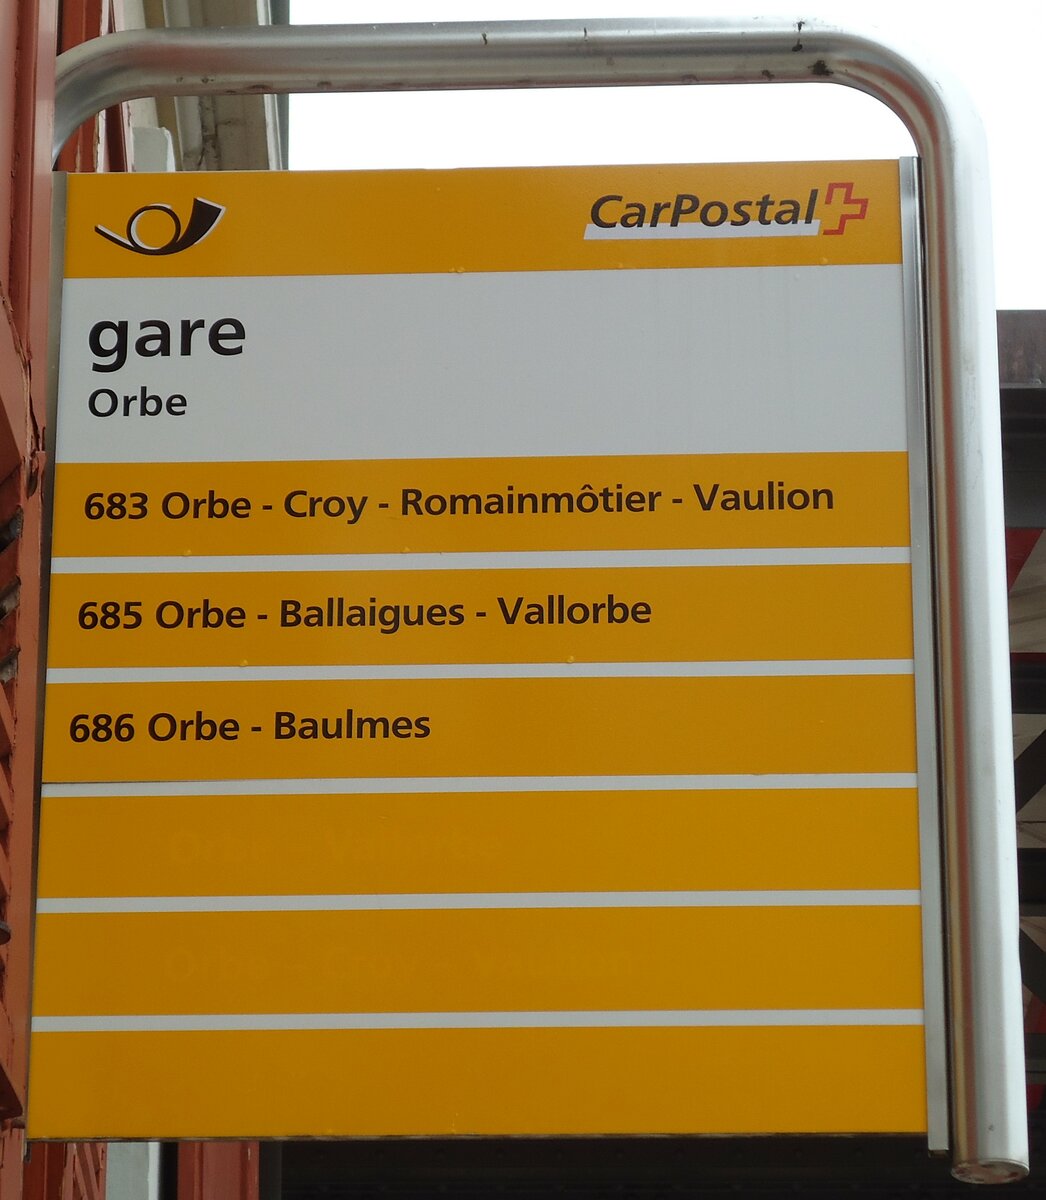 (143'840) - PostAuto-Haltestellenschild - Orbe, gare - am 27. April 2013